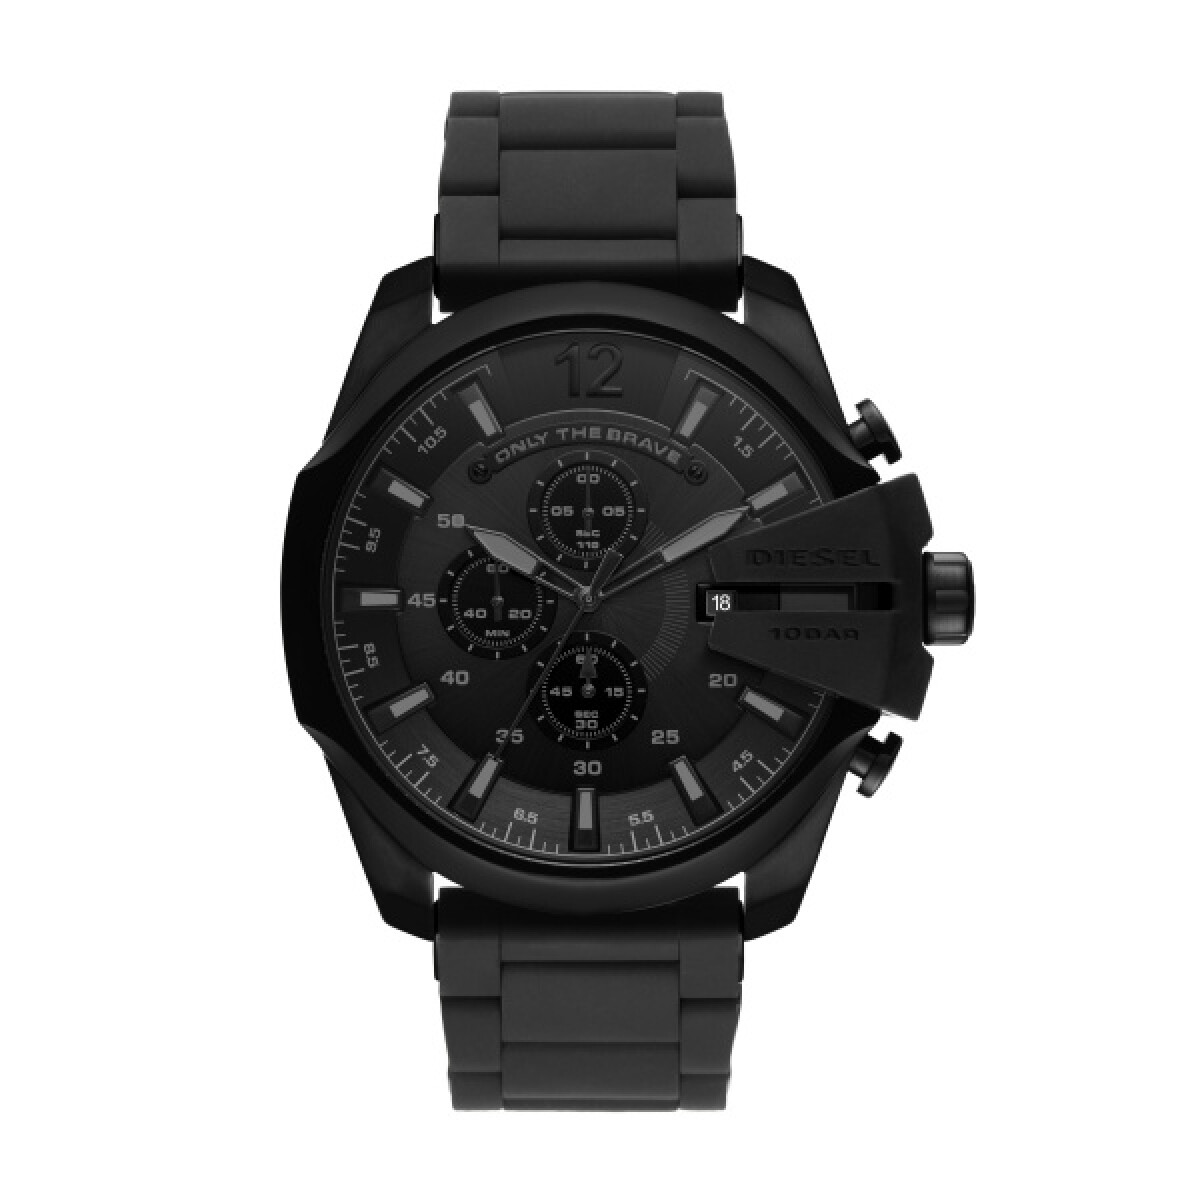 Reloj Diesel Fashion Acero Negro 